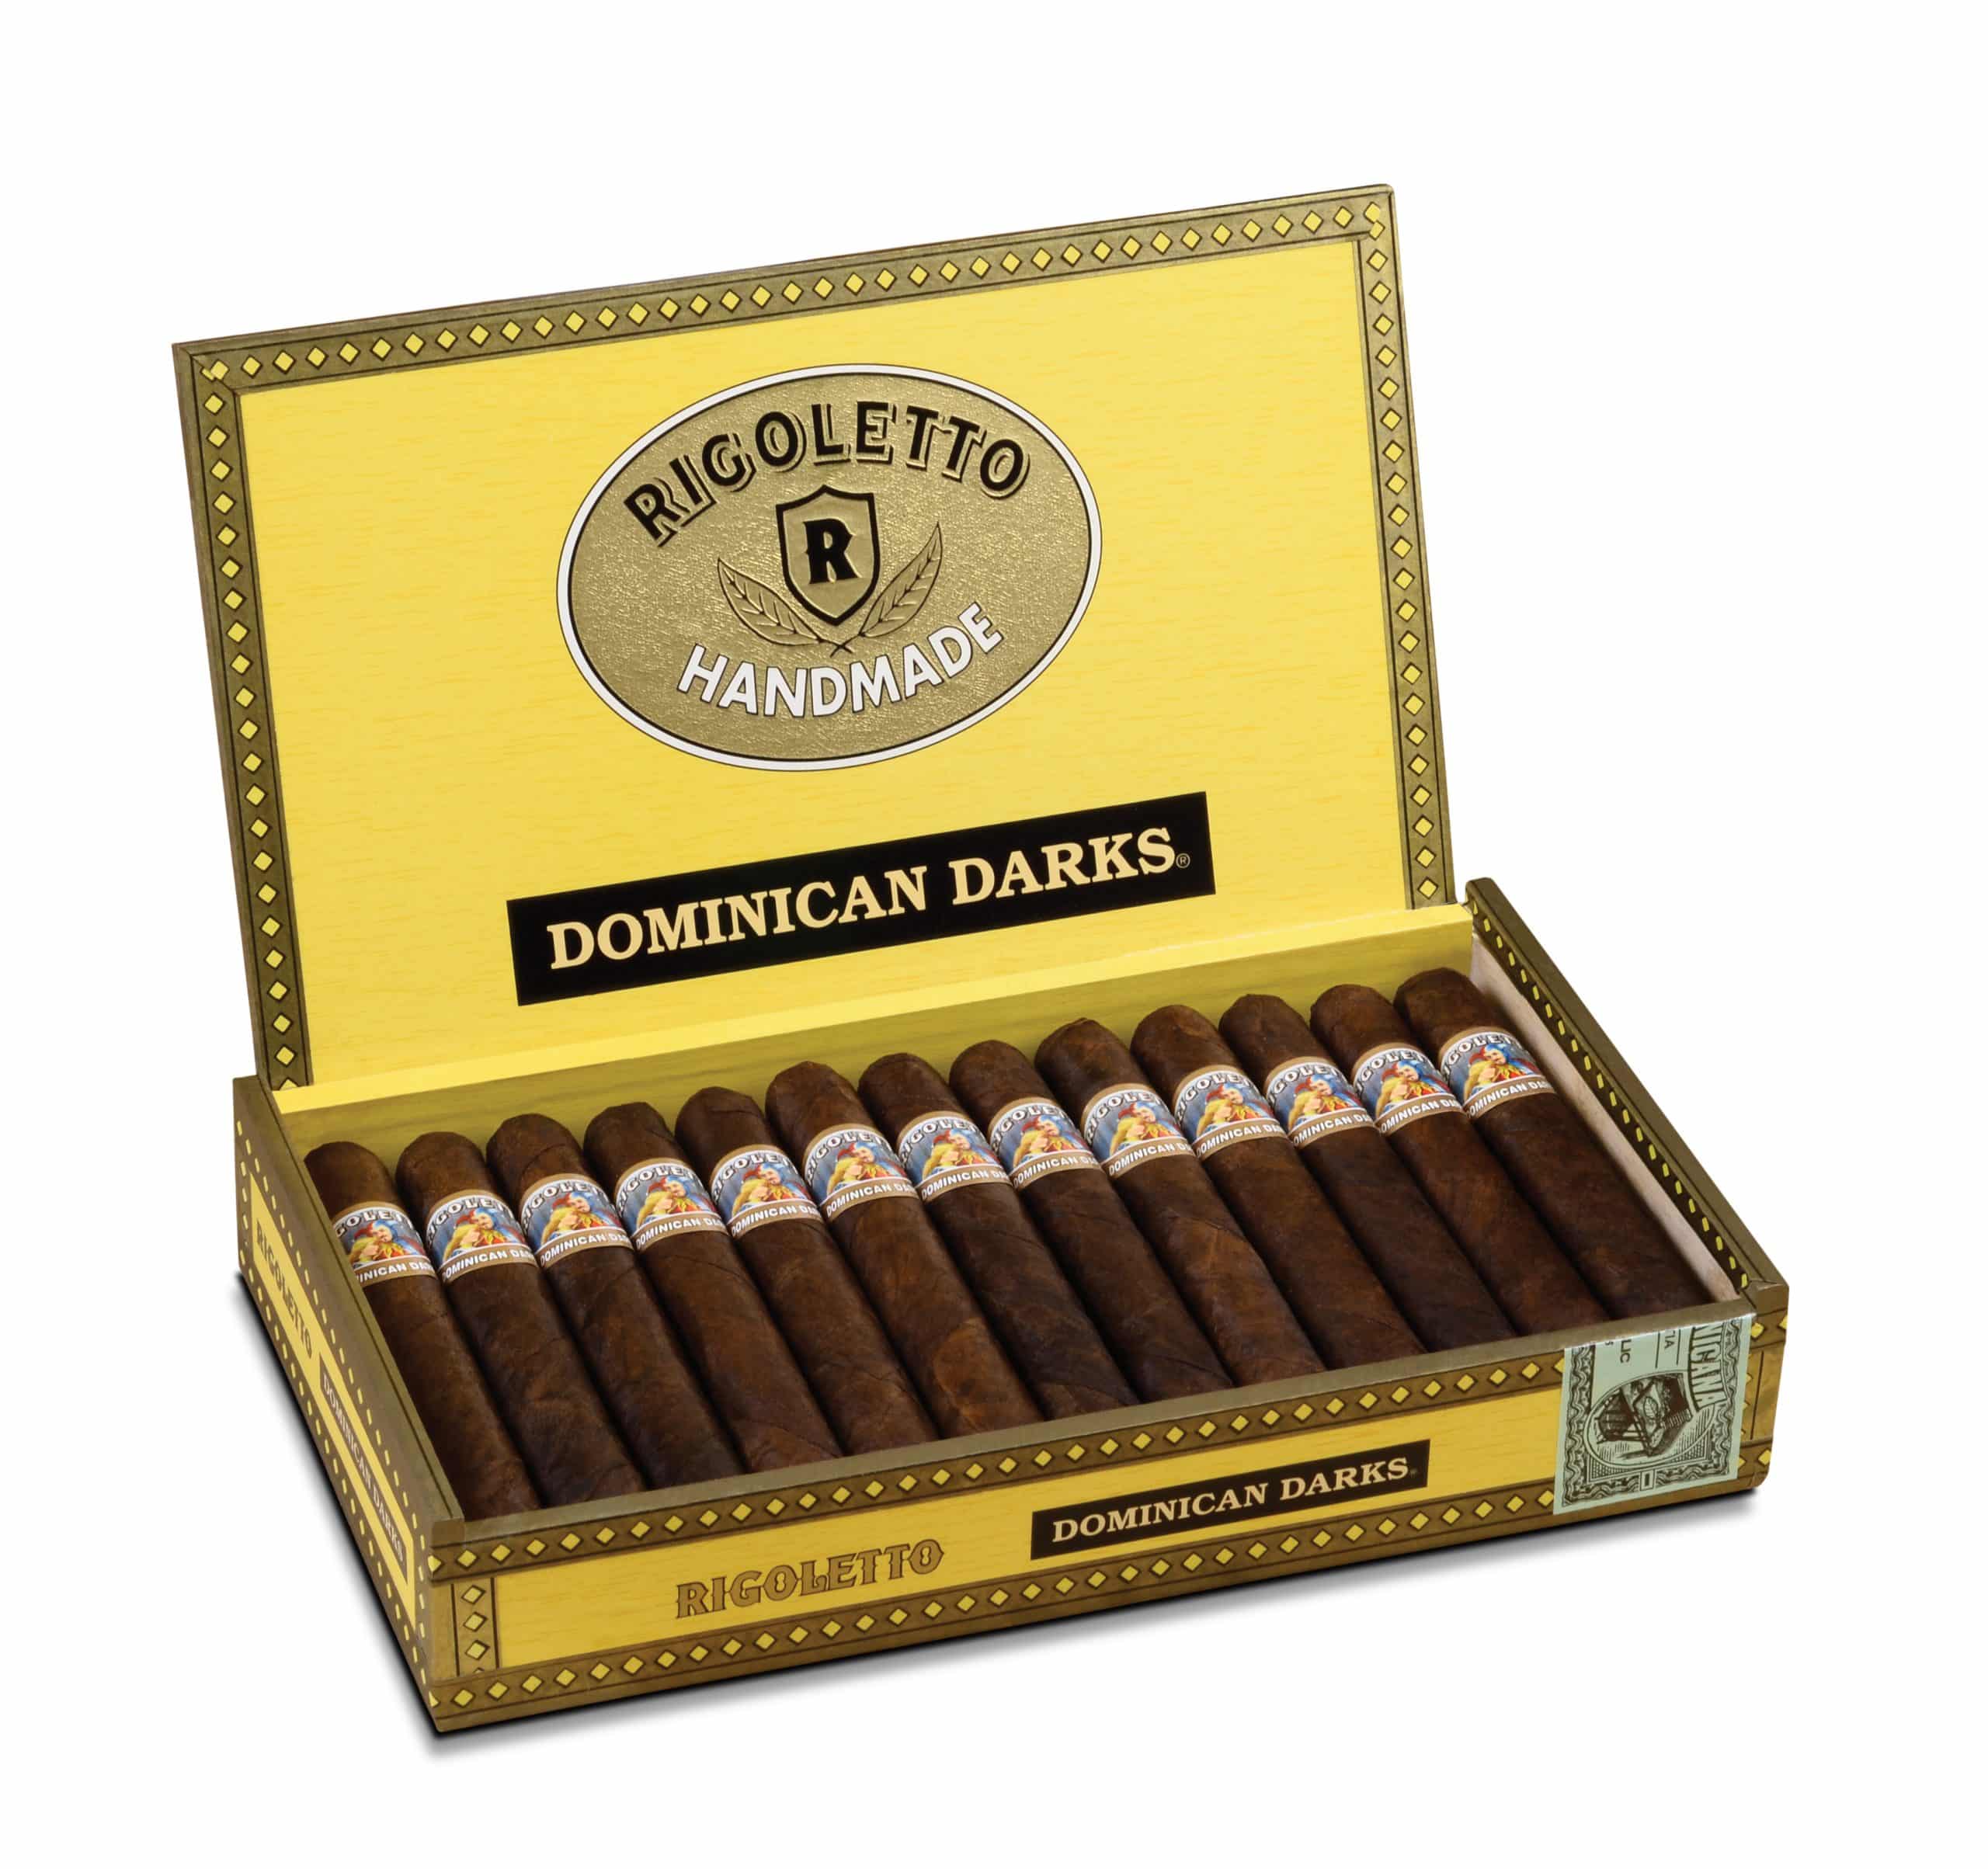 rigoletto dominican darks box open